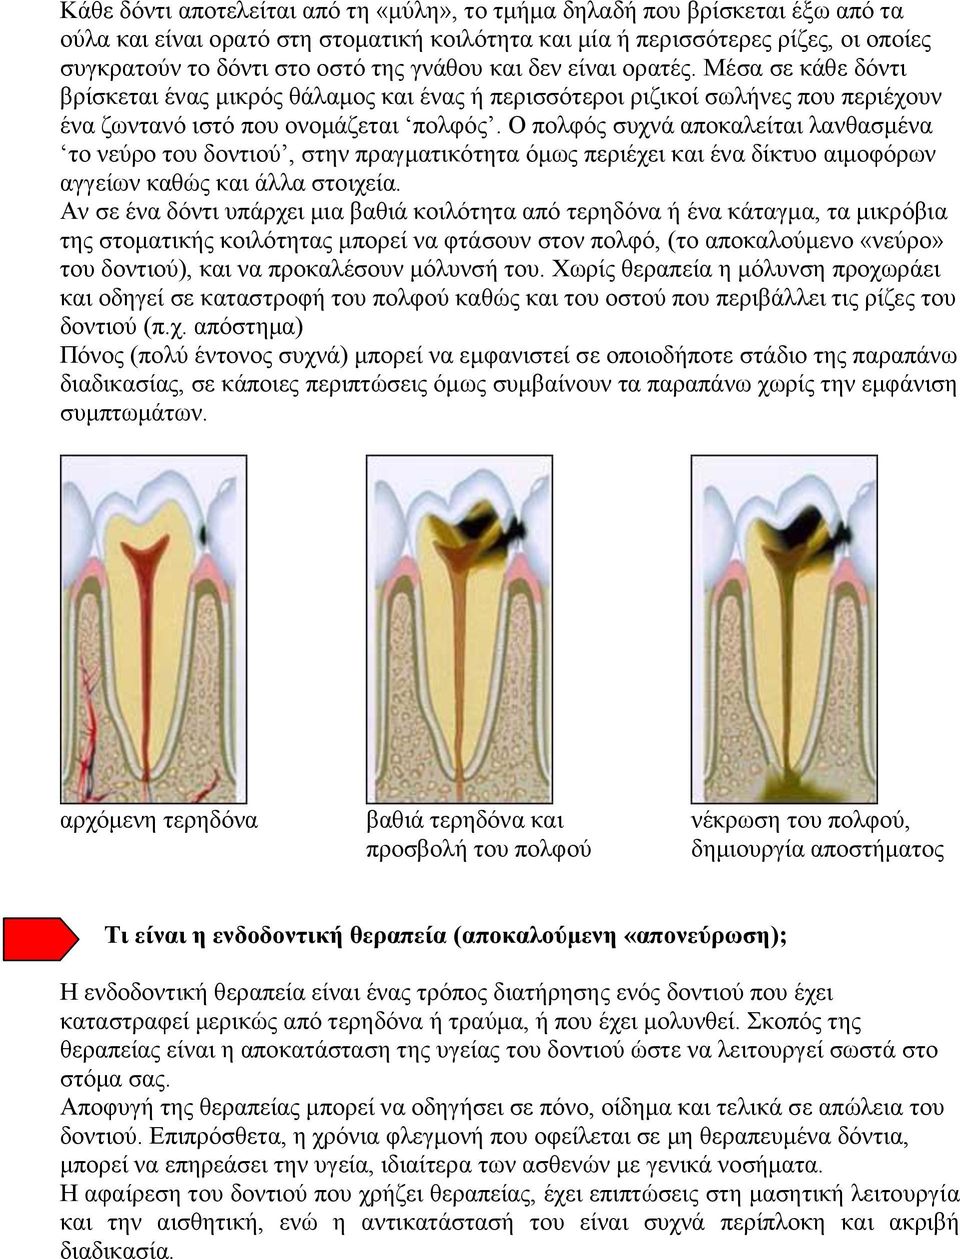 Ο πολφός συχνά αποκαλείται λανθασμένα το νεύρο του δοντιού, στην πραγματικότητα όμως περιέχει και ένα δίκτυο αιμοφόρων αγγείων καθώς και άλλα στοιχεία.